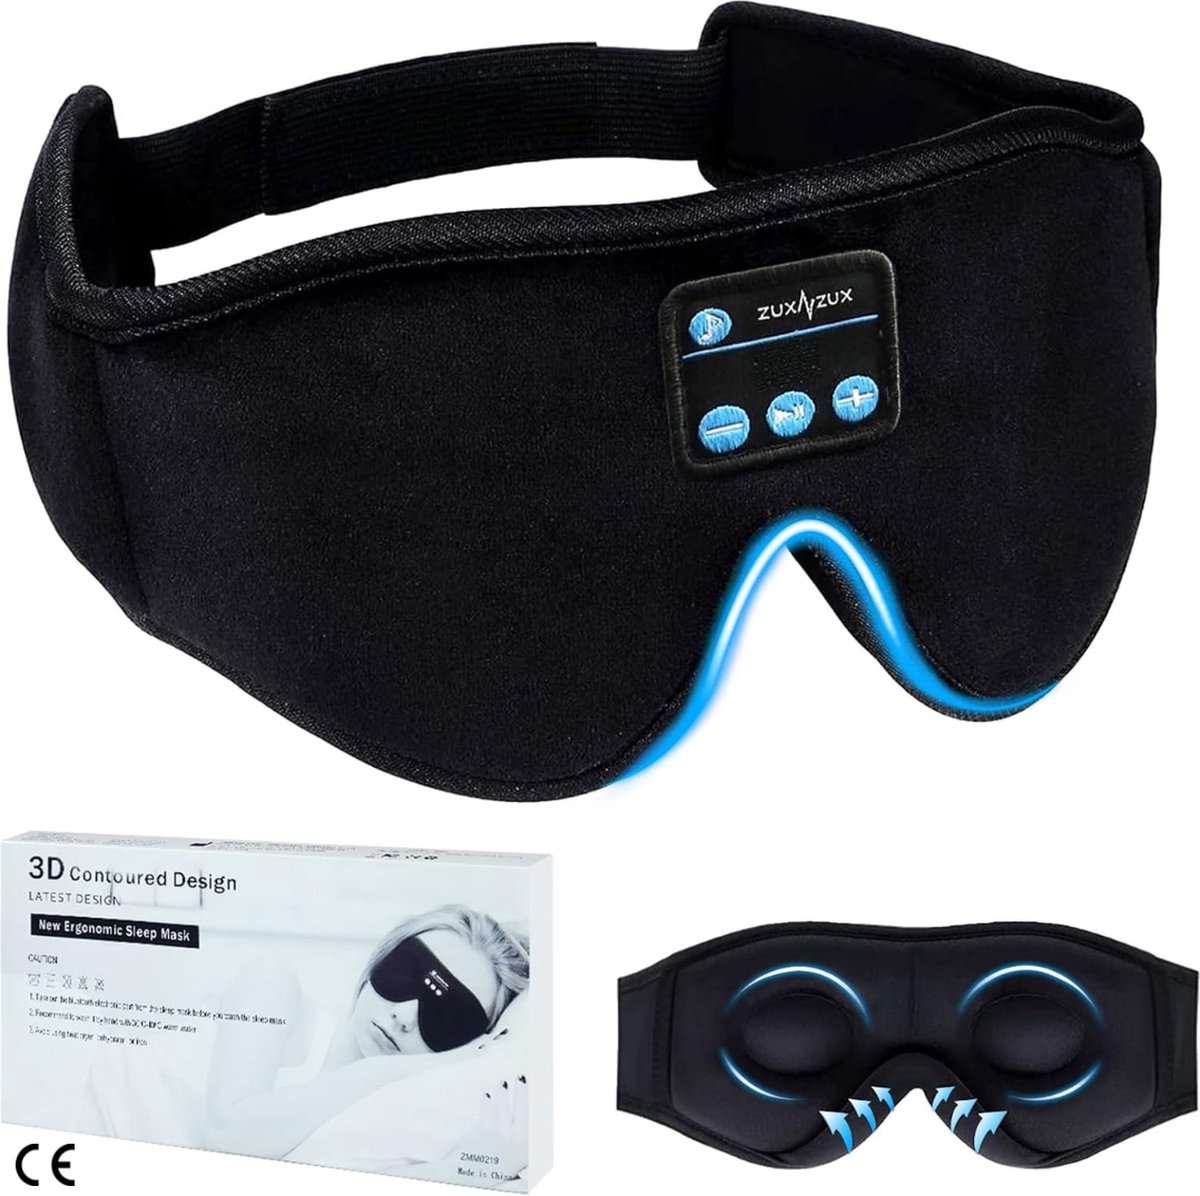 Bluetooth Slaapmasker 3D Oogmasker met Hoofdtelefoon - Comfortabel en Verstelbaar - Ideaal voor Reizen, Siësta, Yoga, Vliegtuigreizen, Meditatie - Geschikt voor Dames en Heren - Zwart